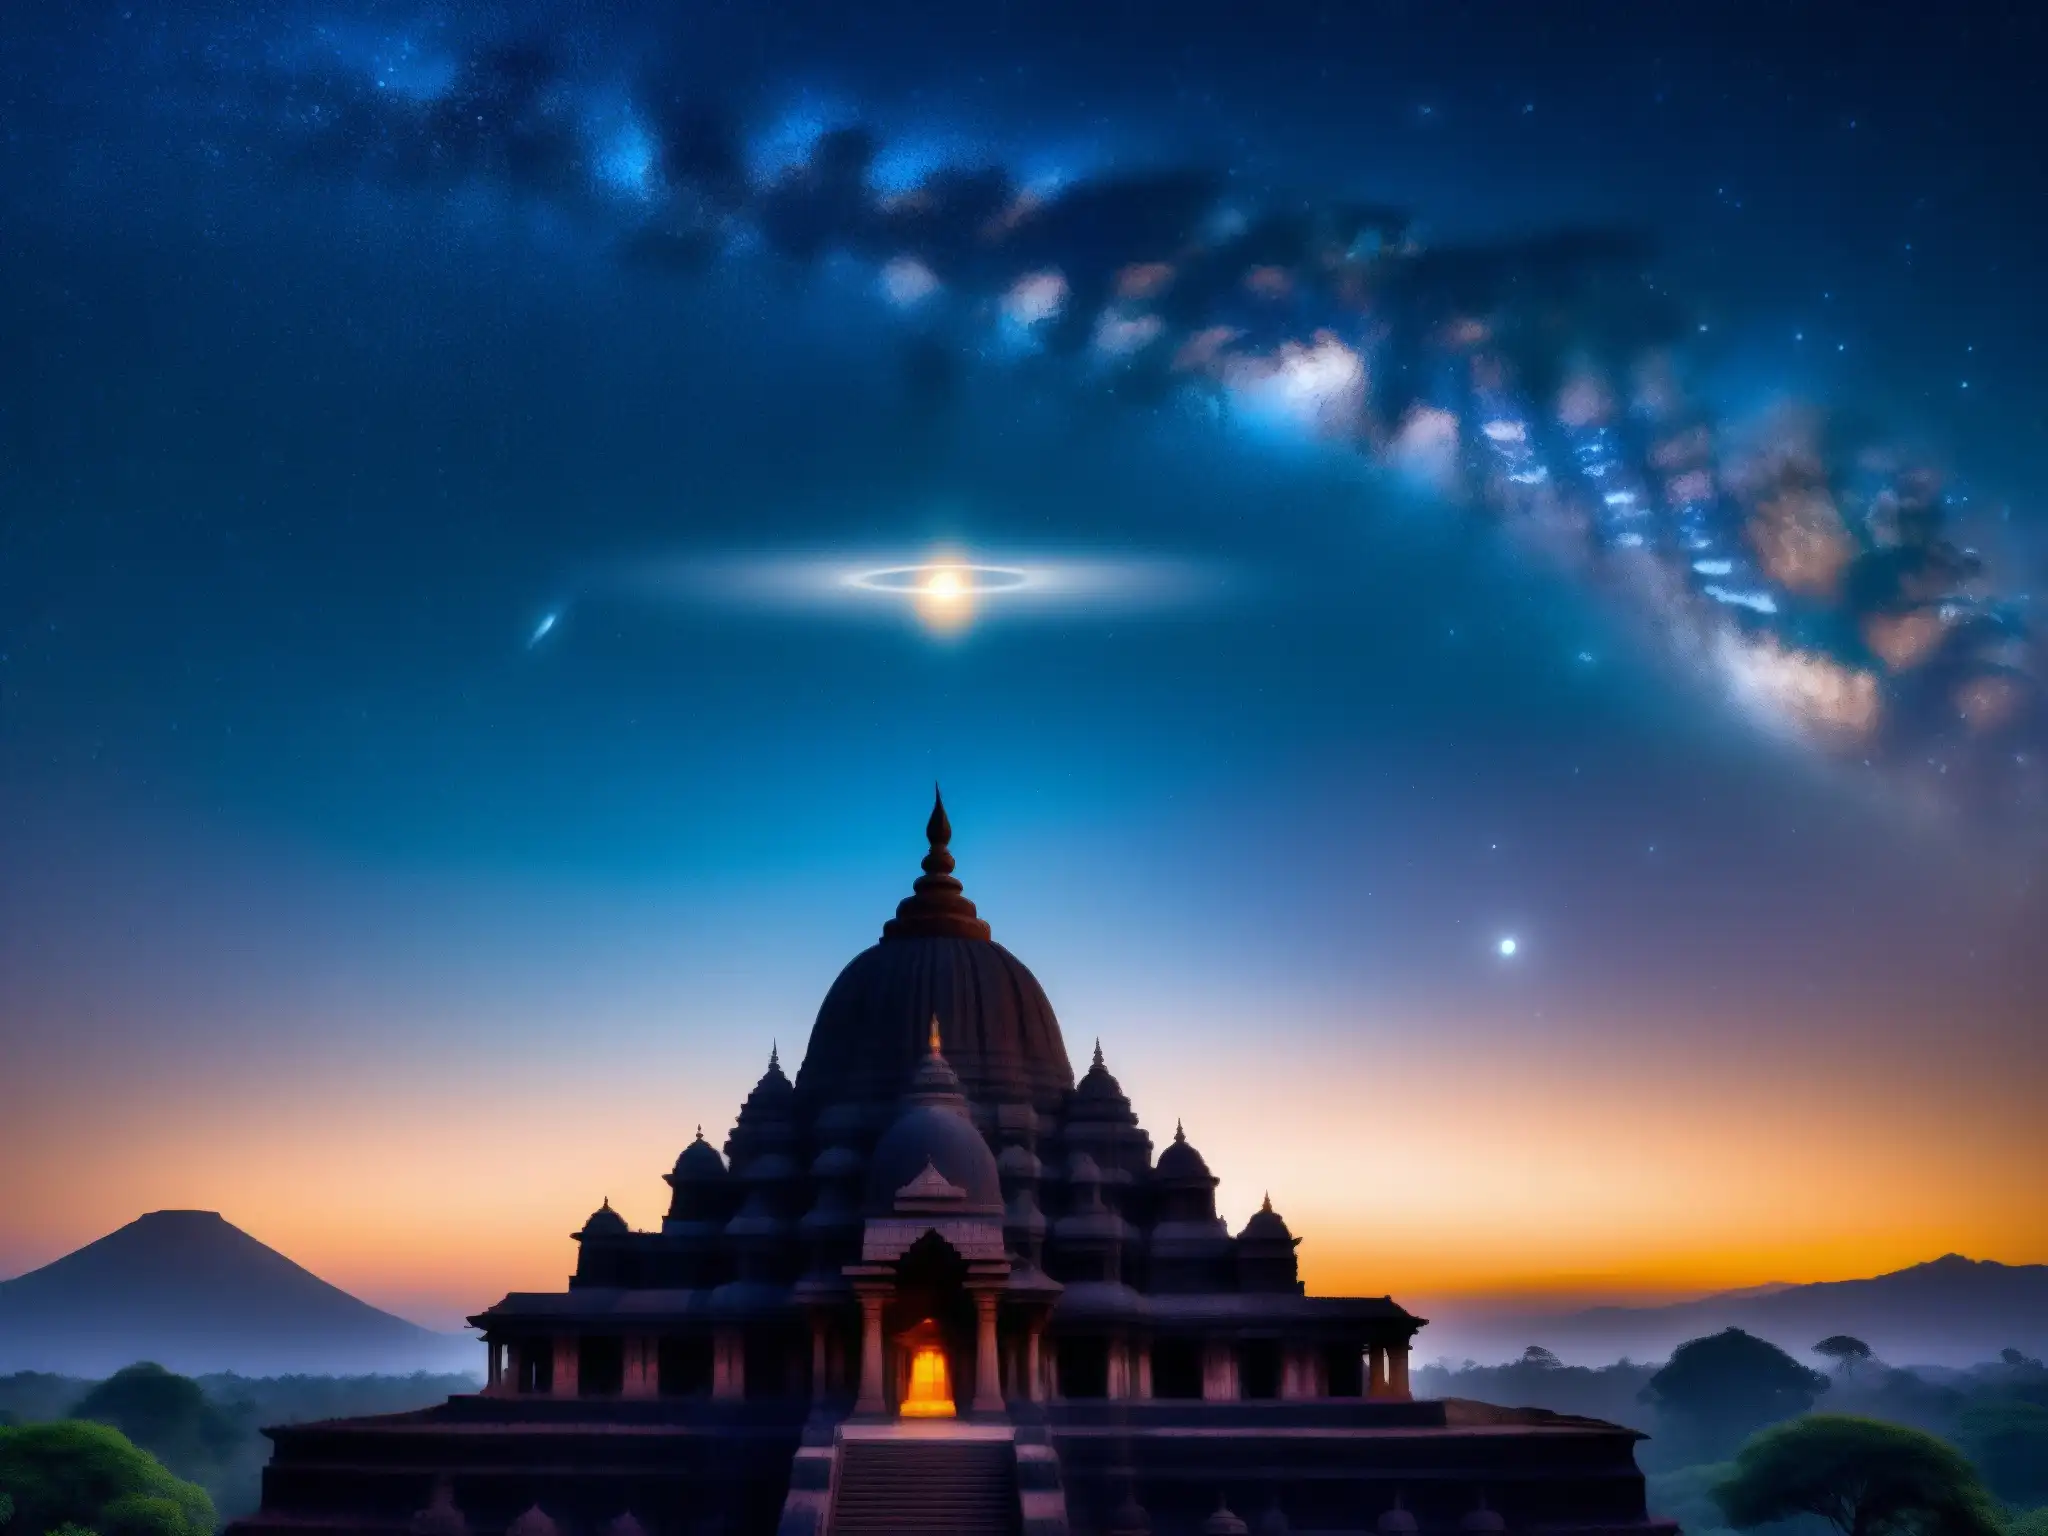 Una noche mística sobre los templos antiguos de la India, con el misterioso brillo del Origen mitológico Muhnochwa India en el horizonte estrellado